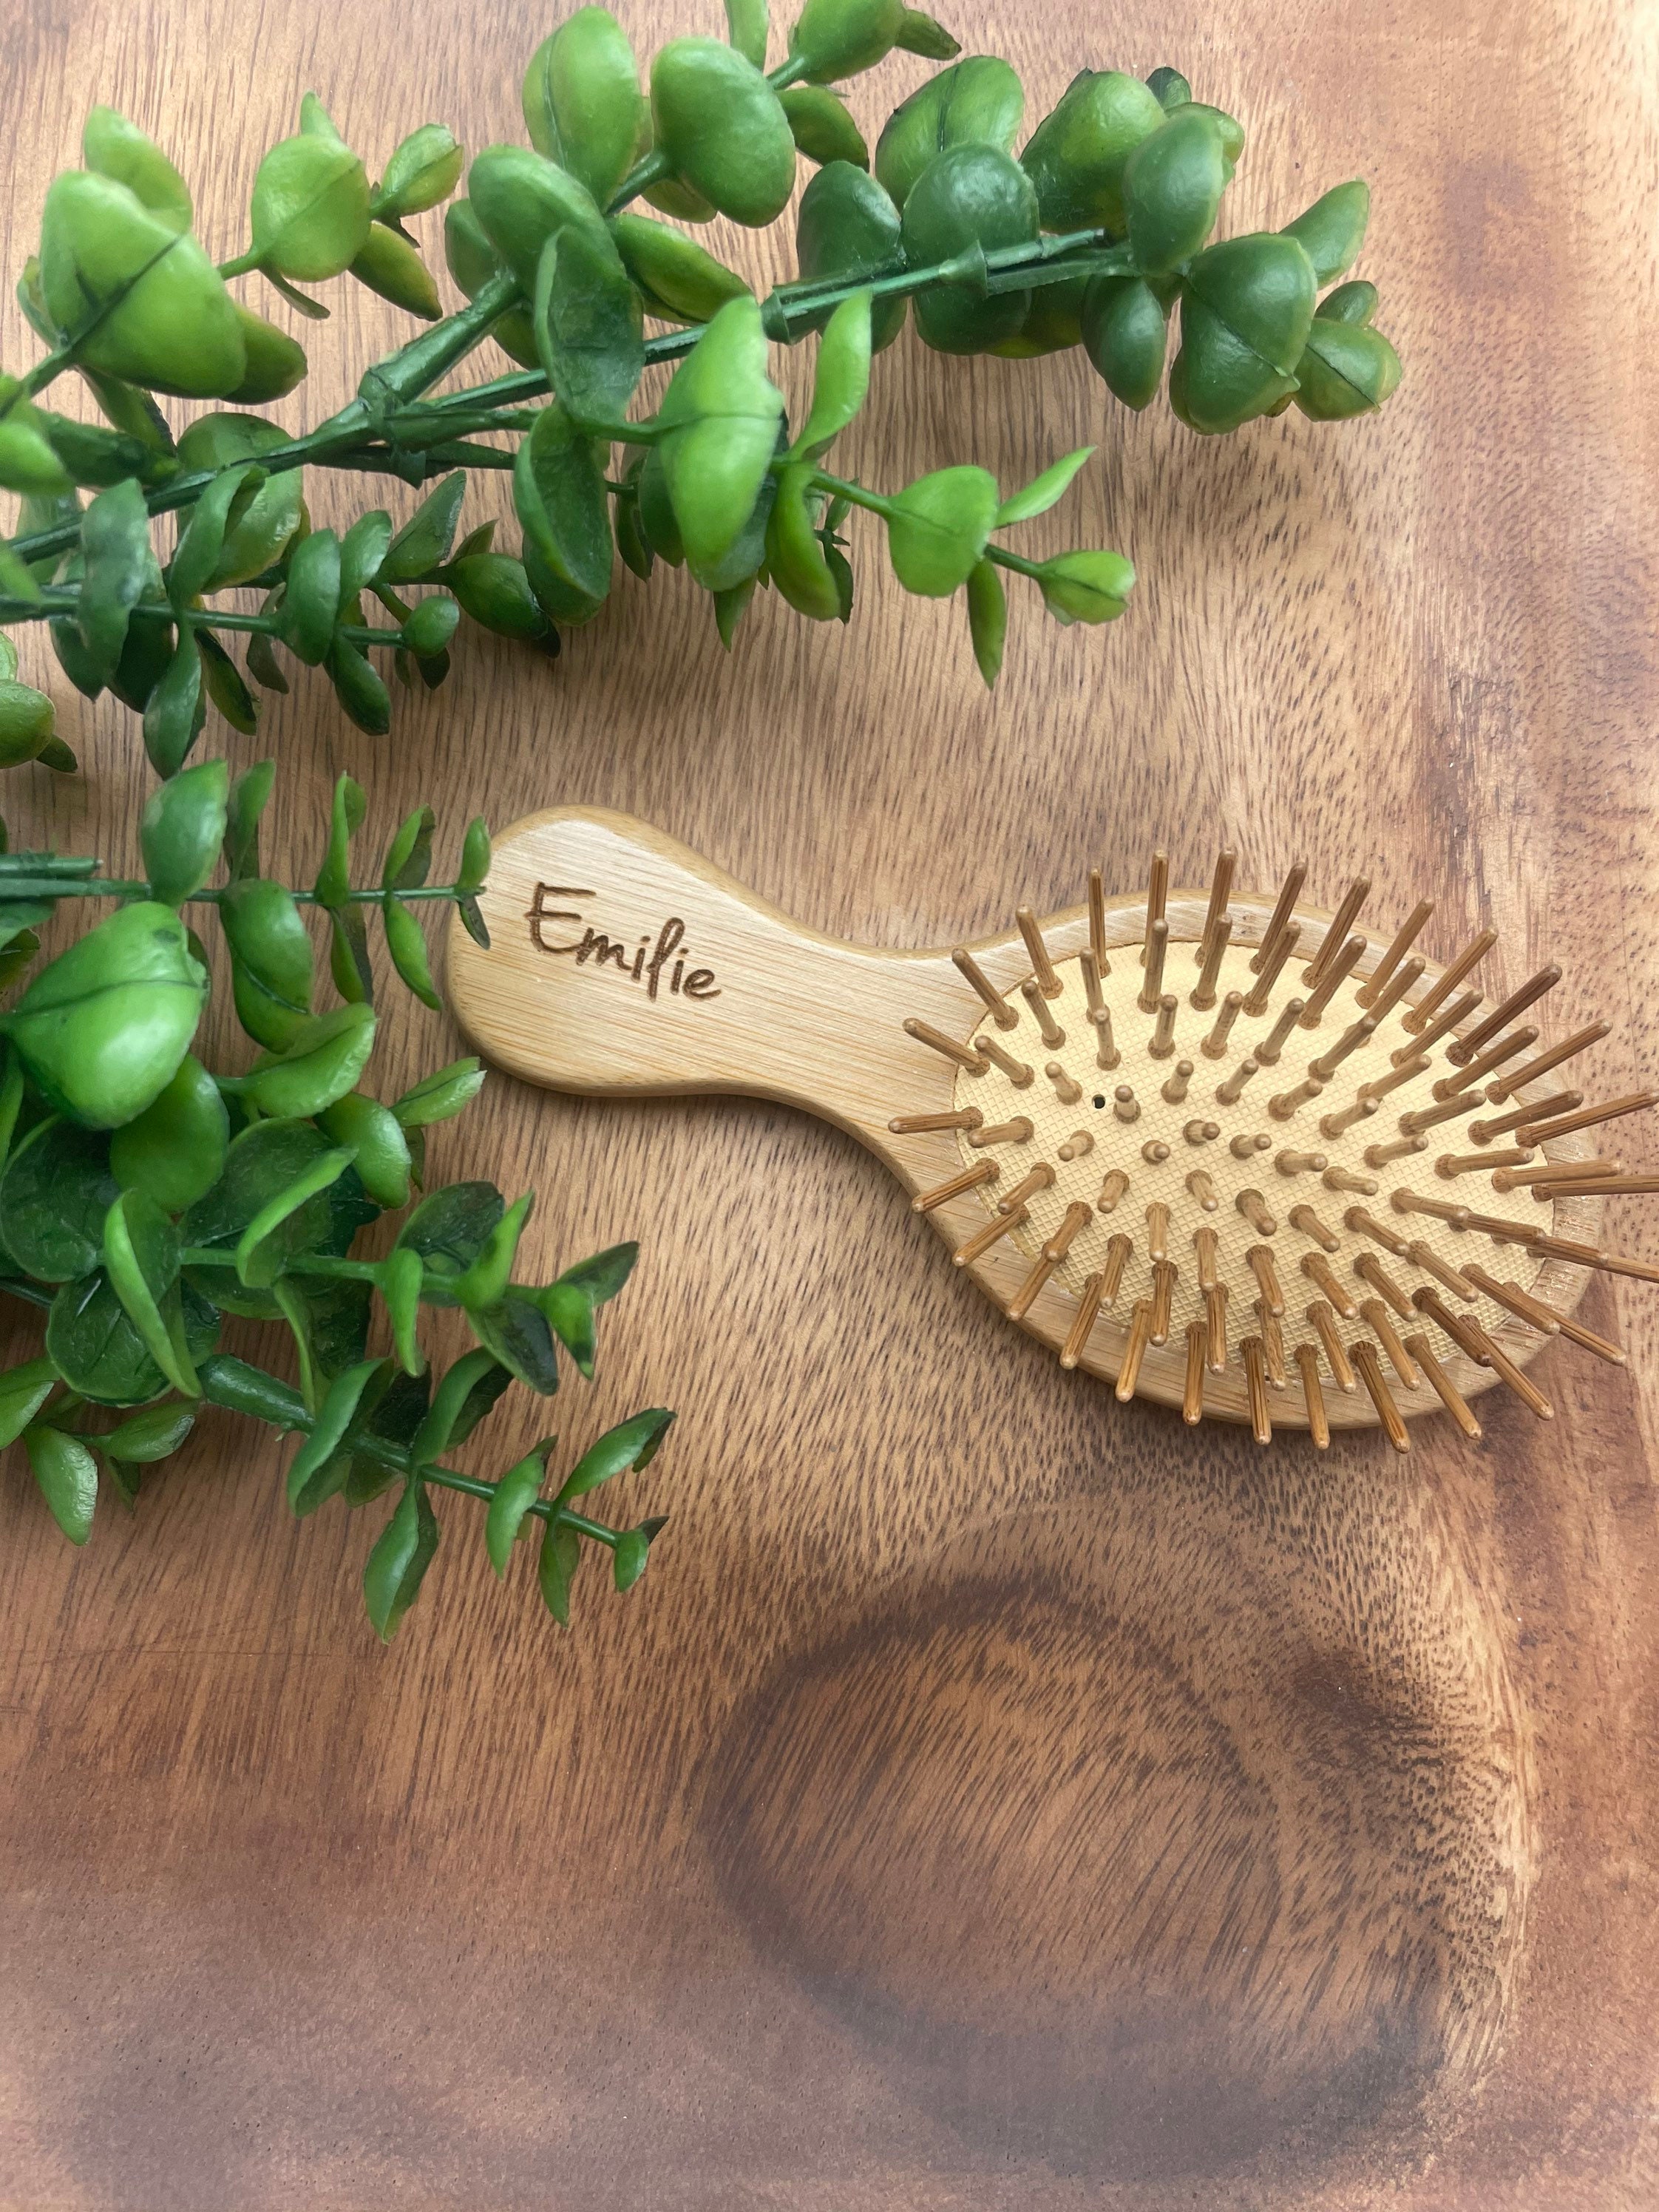 Wooden Hair Brush, BESTOOL Small Travel Hair Brushes for Women, Men or  Kids, Wooden Toddler Hairbrush for Massaging, Detangling, Defrizz,  Distribute Oil (Natural)